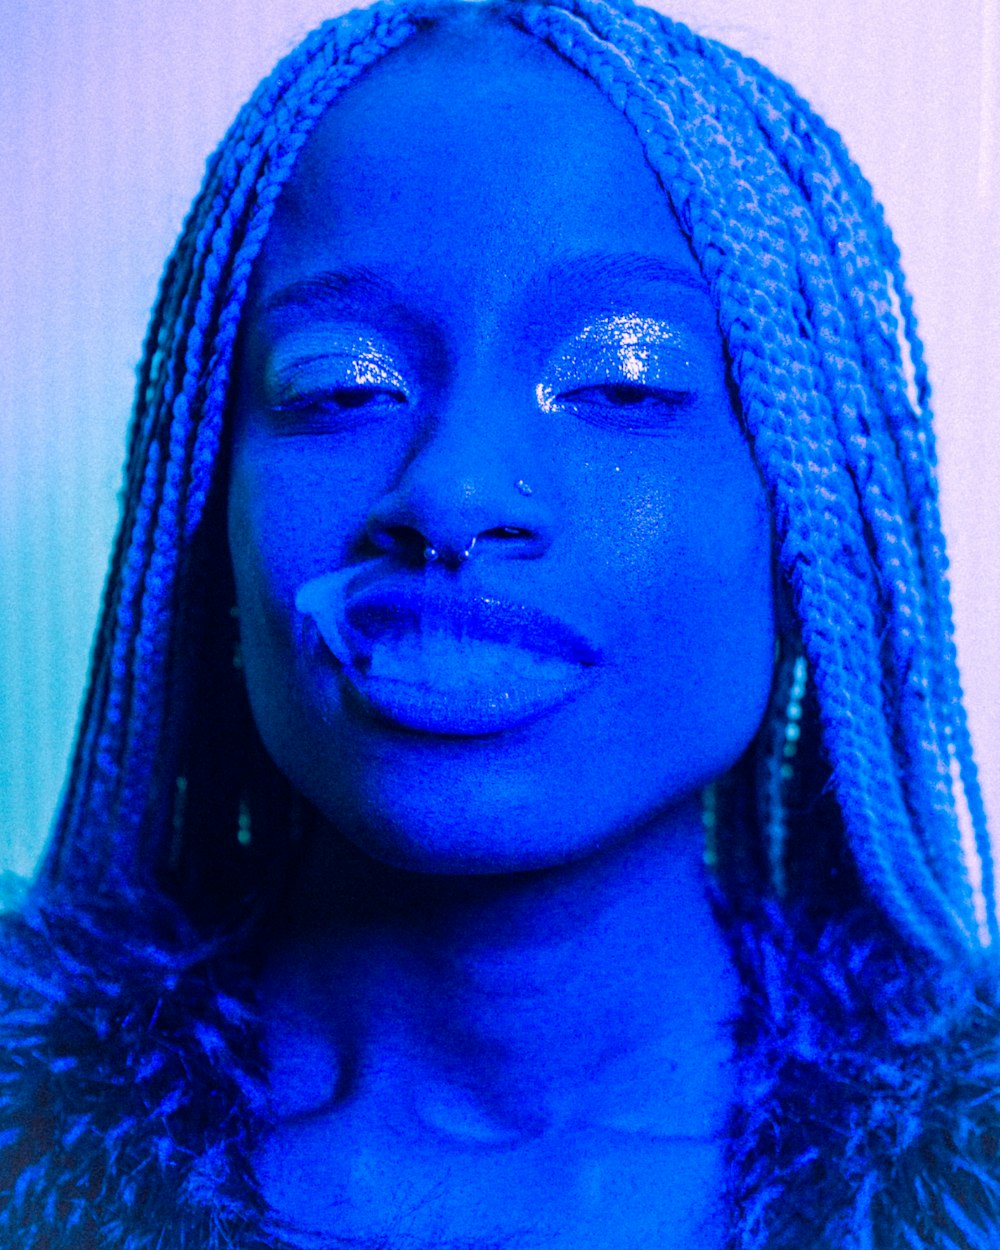 um close up de uma pessoa com maquiagem azul